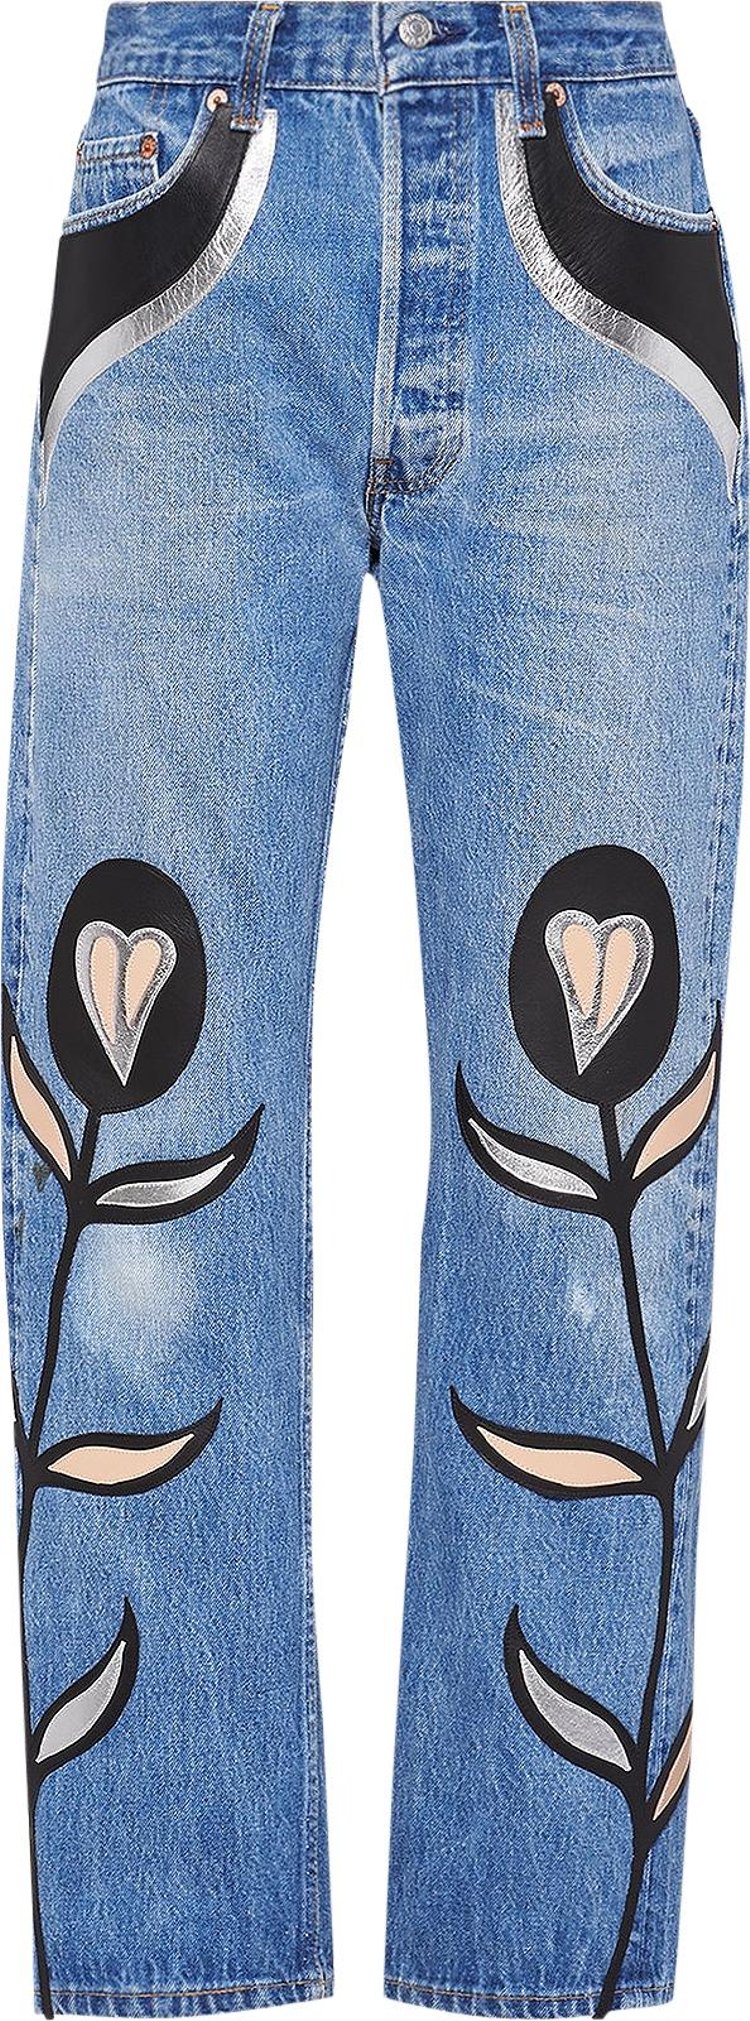 Miu Miu x Levi's Nappa Leather And Denim Jeans 'Blue'